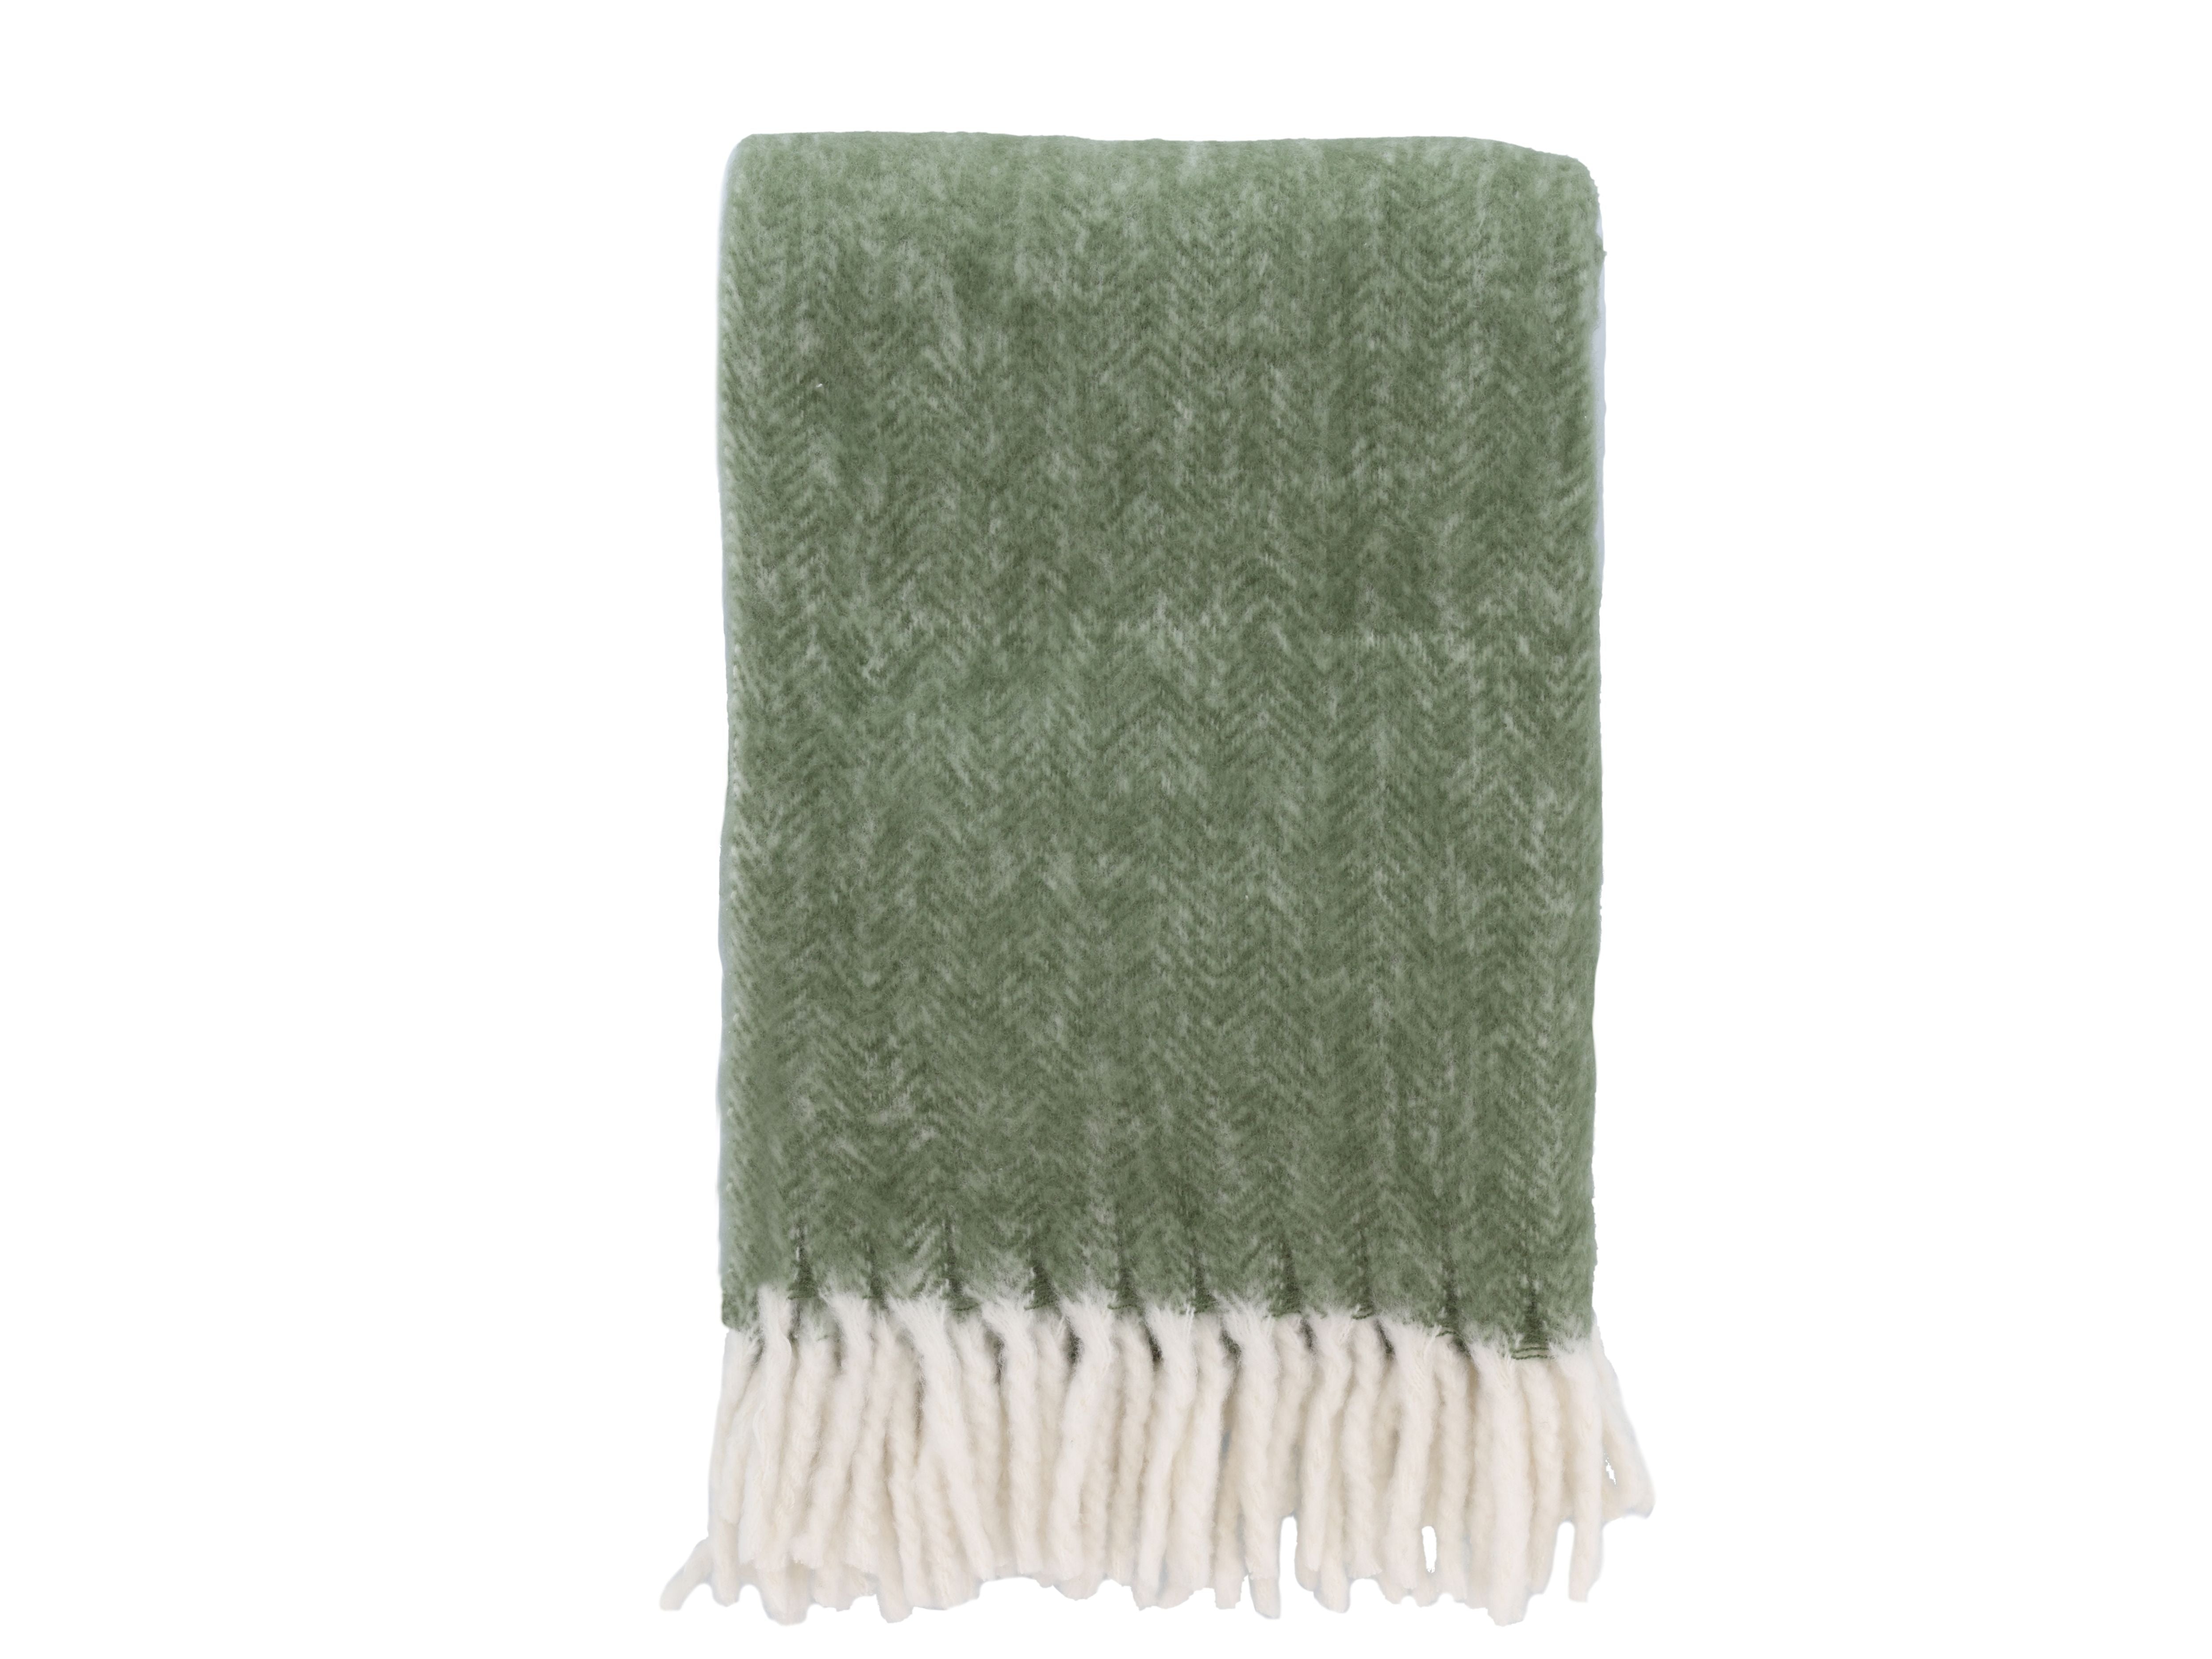 Södahl Brushed Blanket 150x200 Cm, Olive